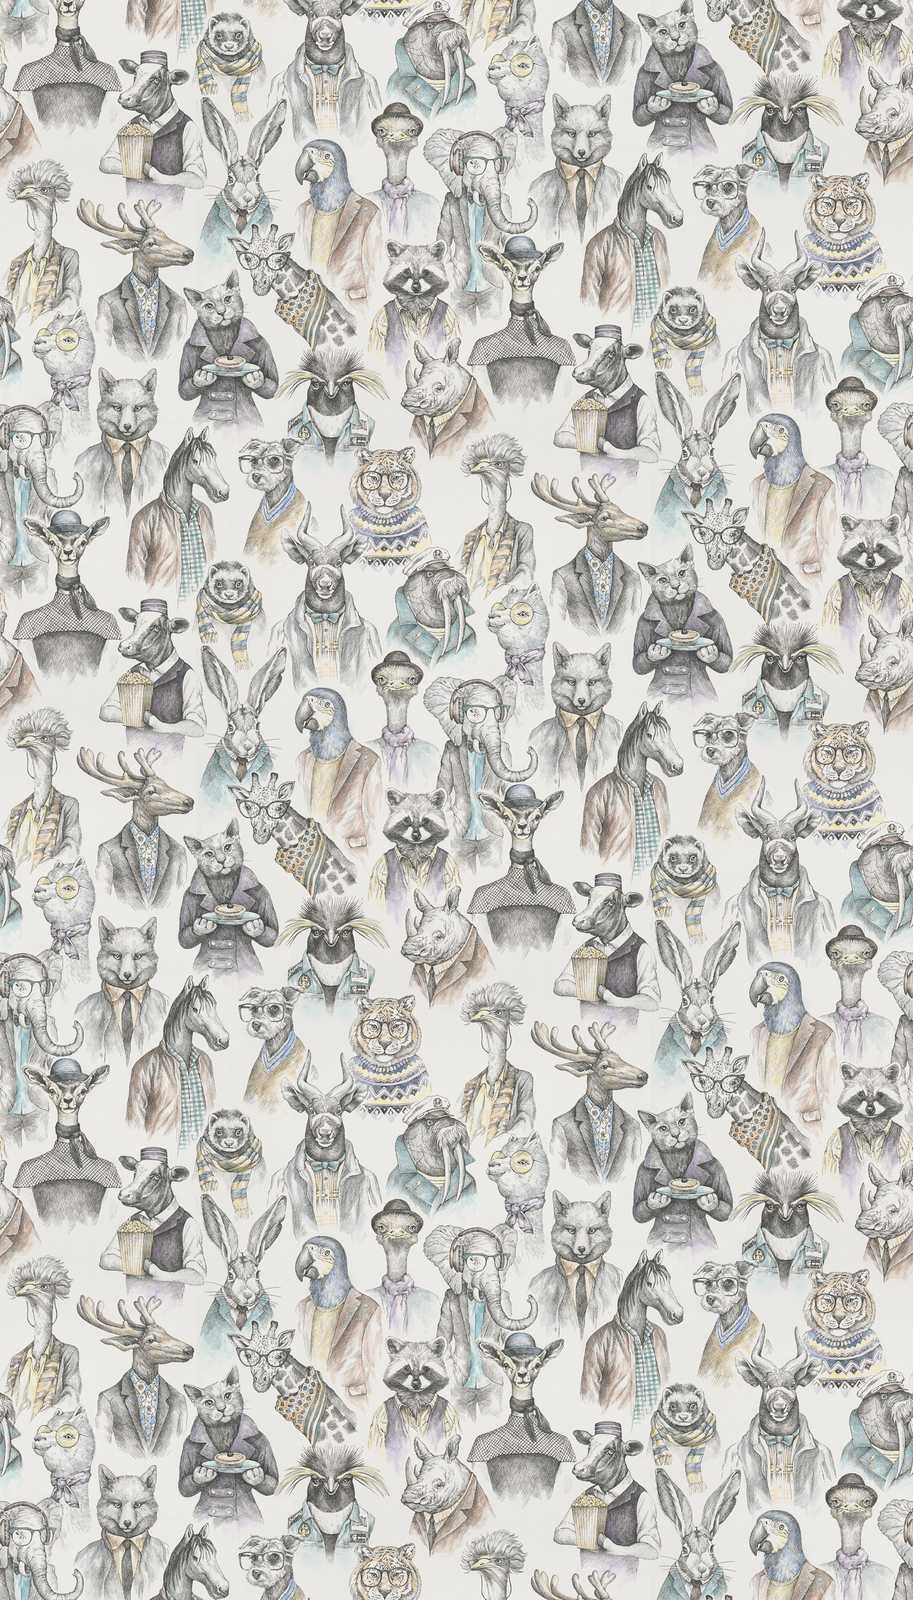             Papel pintado no tejido fabulous animal world de New-Walls - crema, multicolor
        